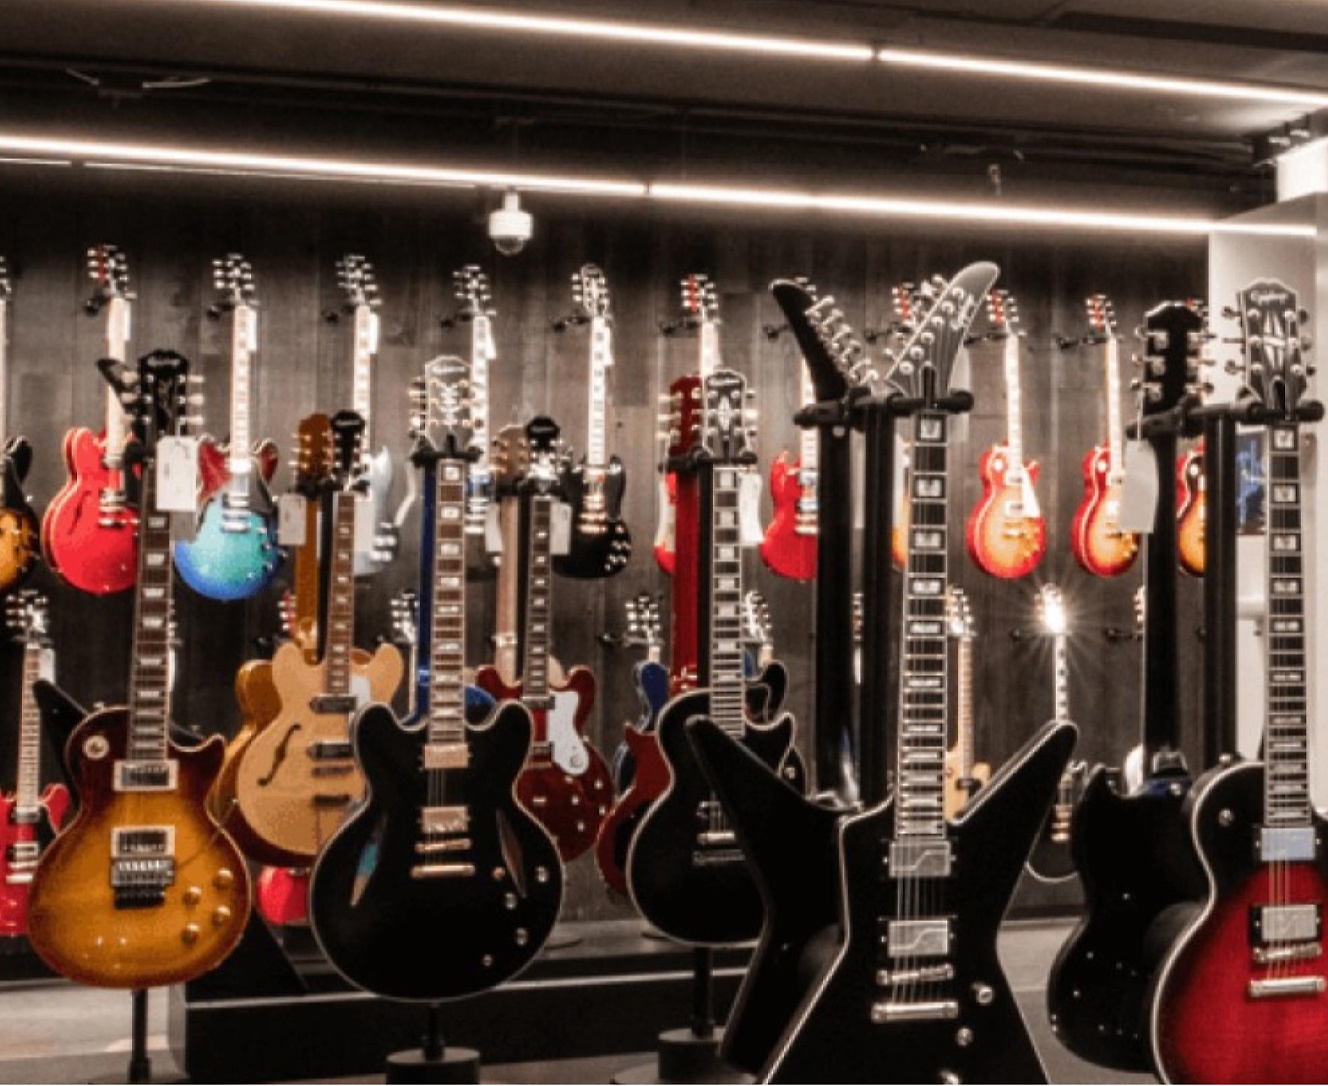 Veel gitaren die staan opgesteld in een winkel.